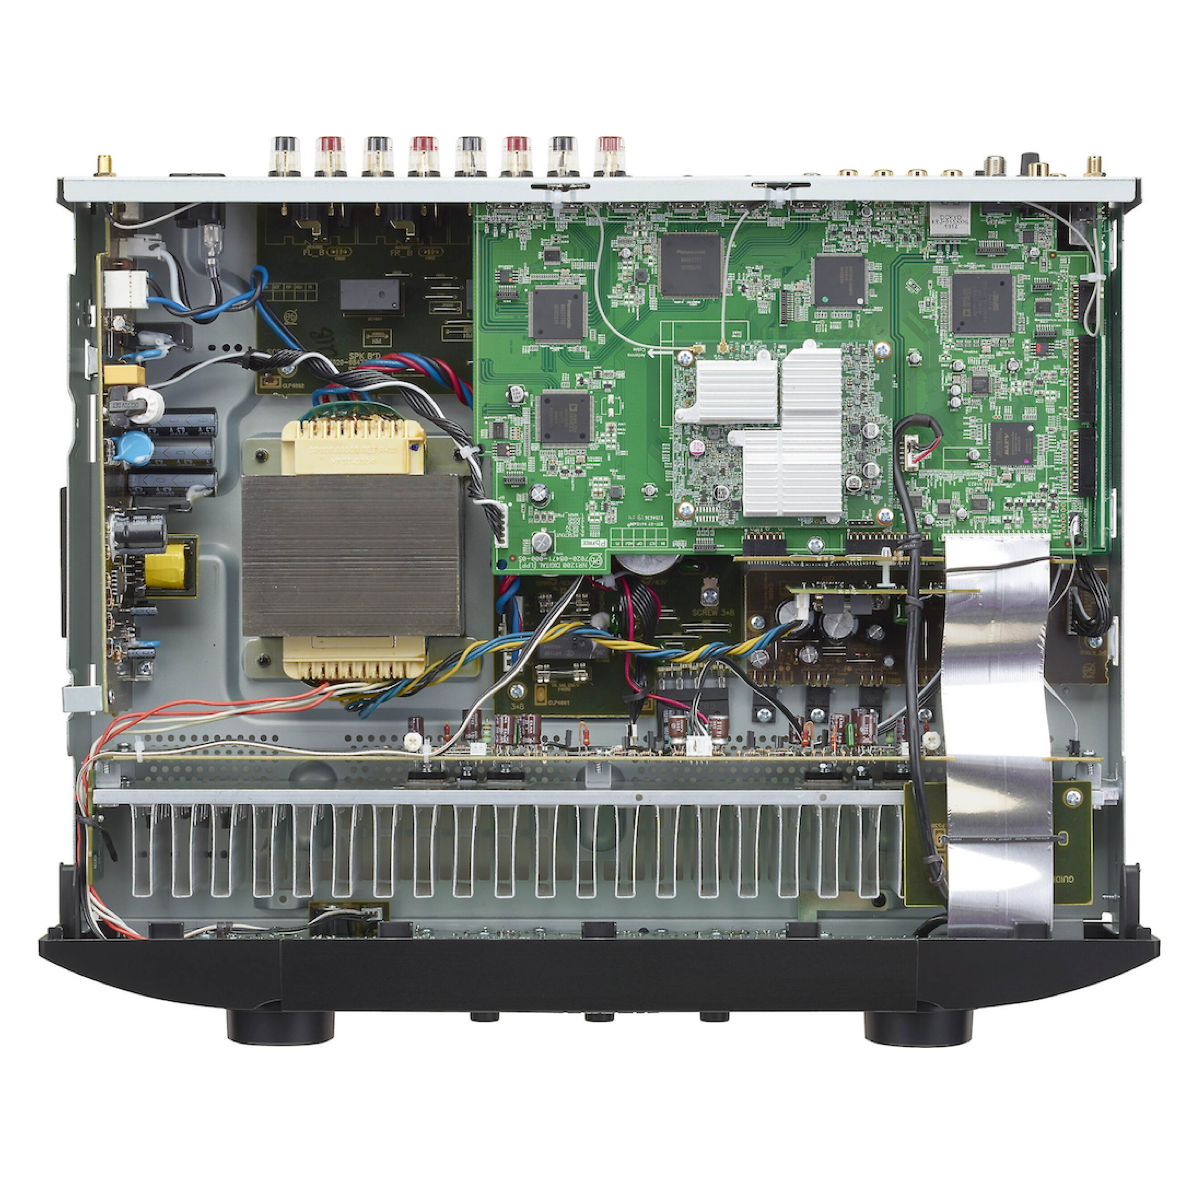 Marantz NR1200 - Stereo Network Receiver - AVStore